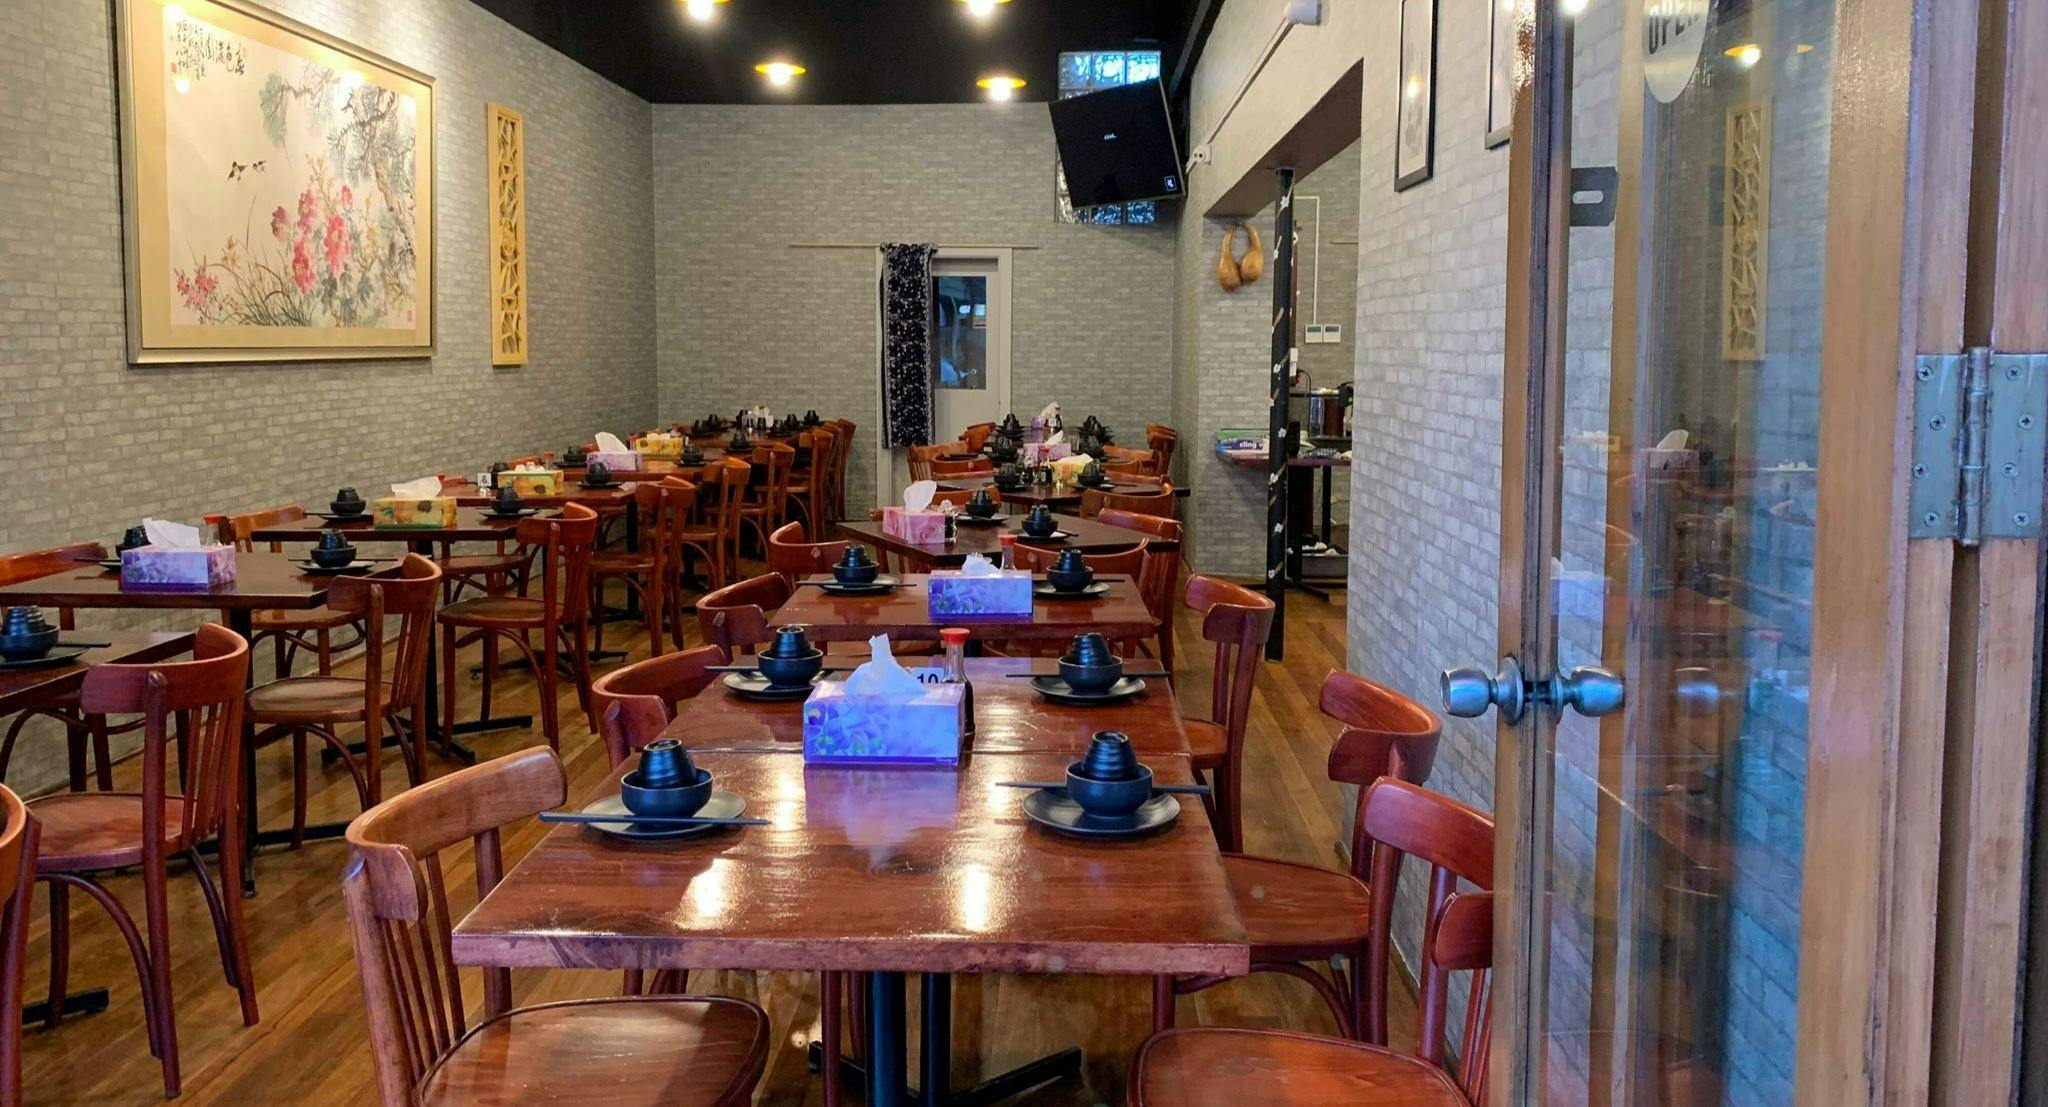 Photo of restaurant Taste of China - Newtown in Newtown, Sydney